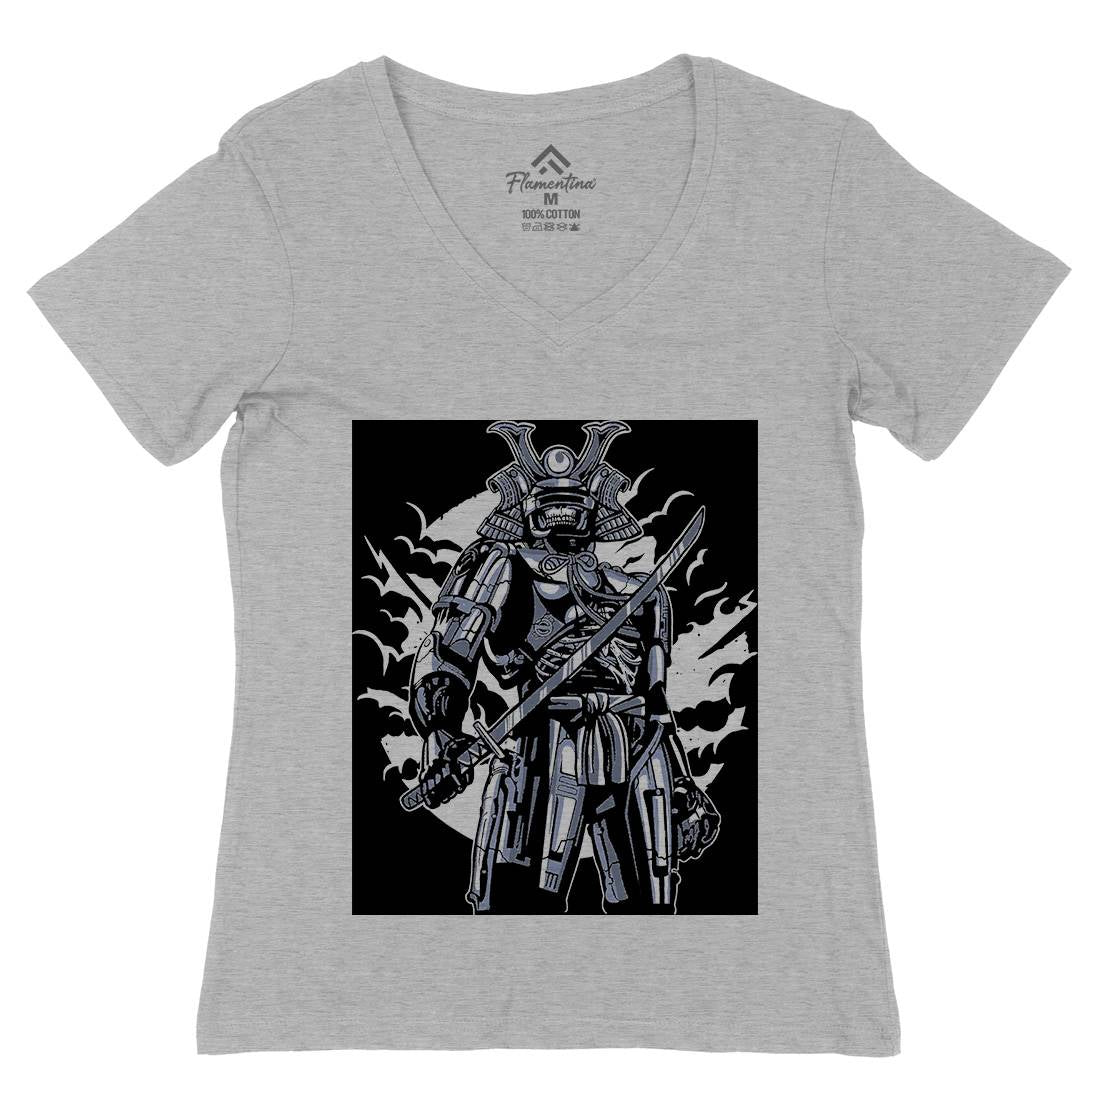 Samurai Robot Womens Organic V-Neck T-Shirt Warriors A569